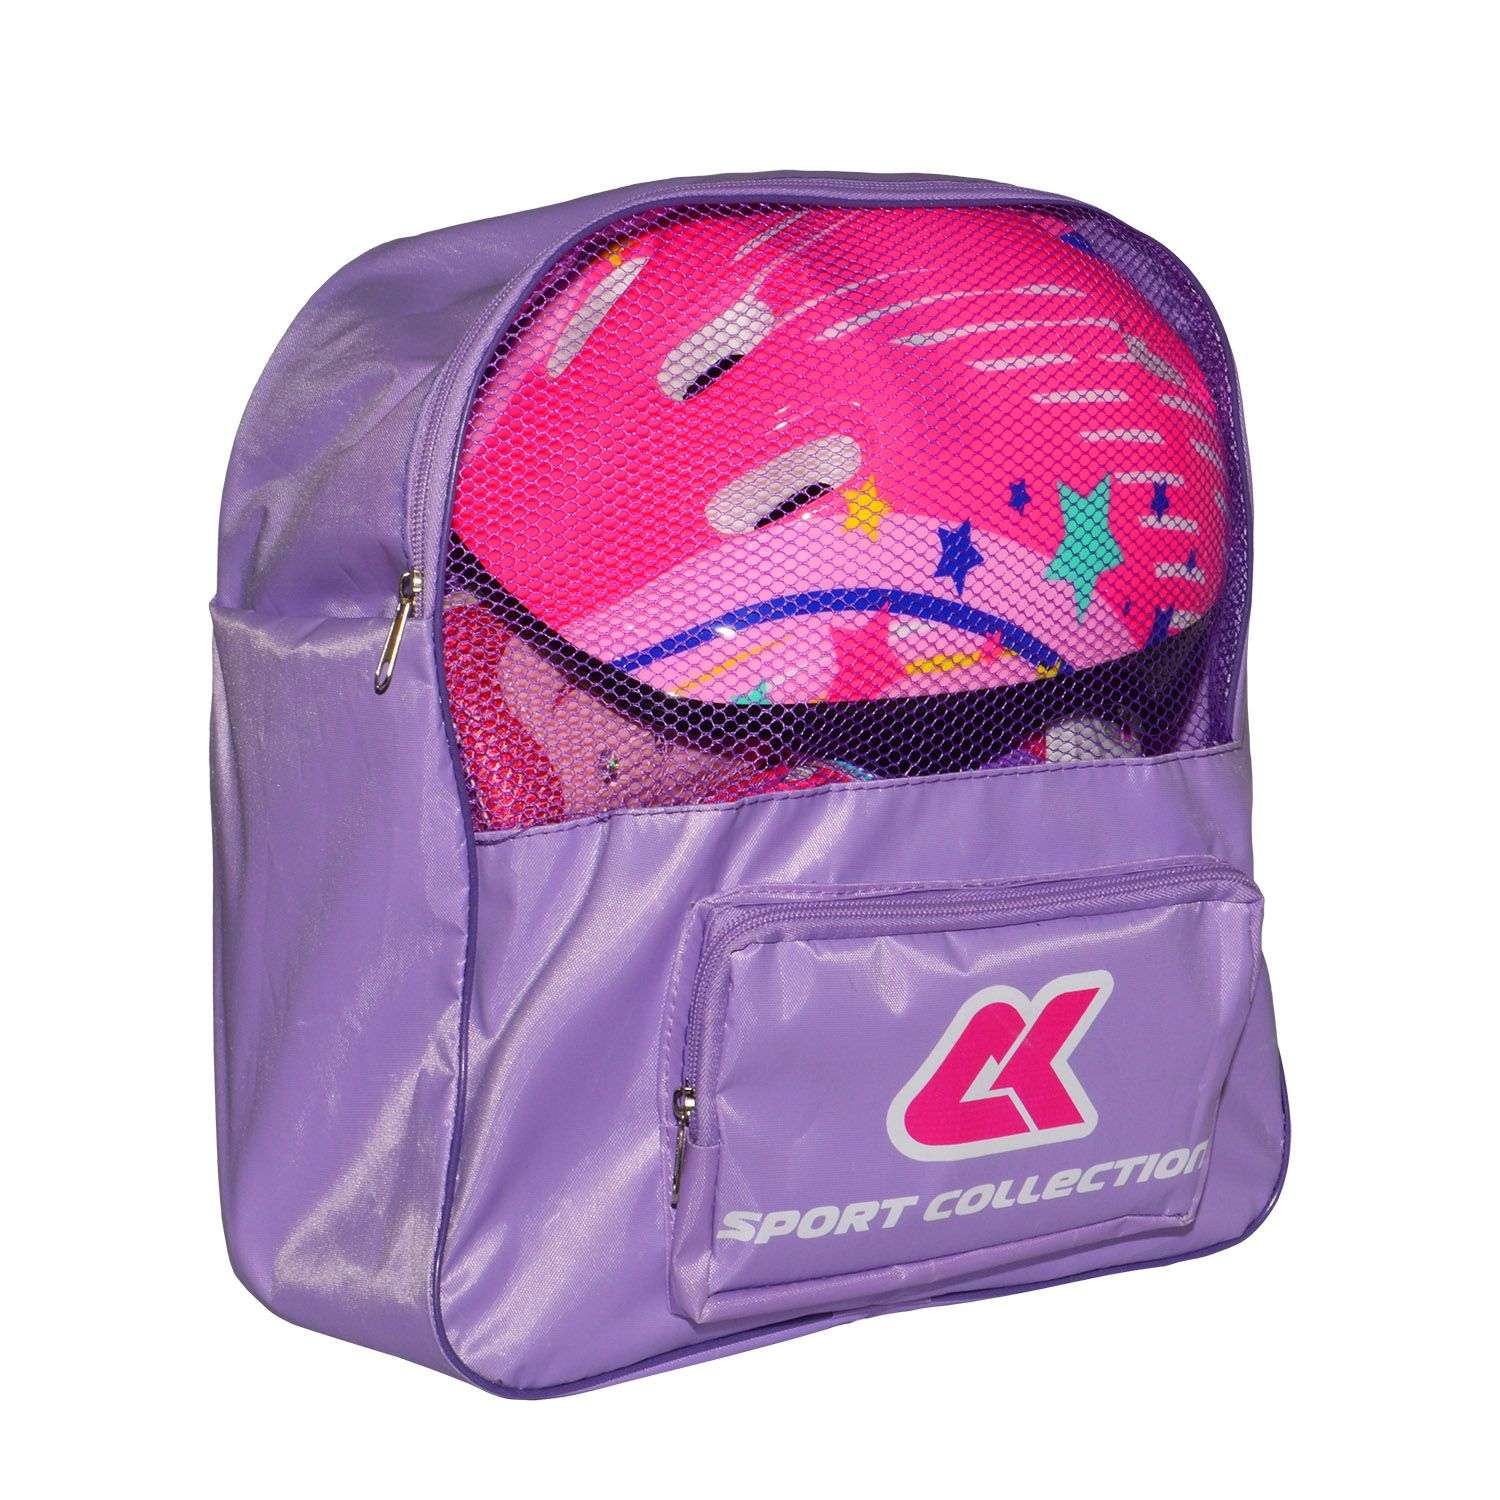 Роликовый комплект Sport Collection в сумке SET JOYFULL Pink ролики р. 29-32 Шлем 50-56 Защита S/M - фото 2